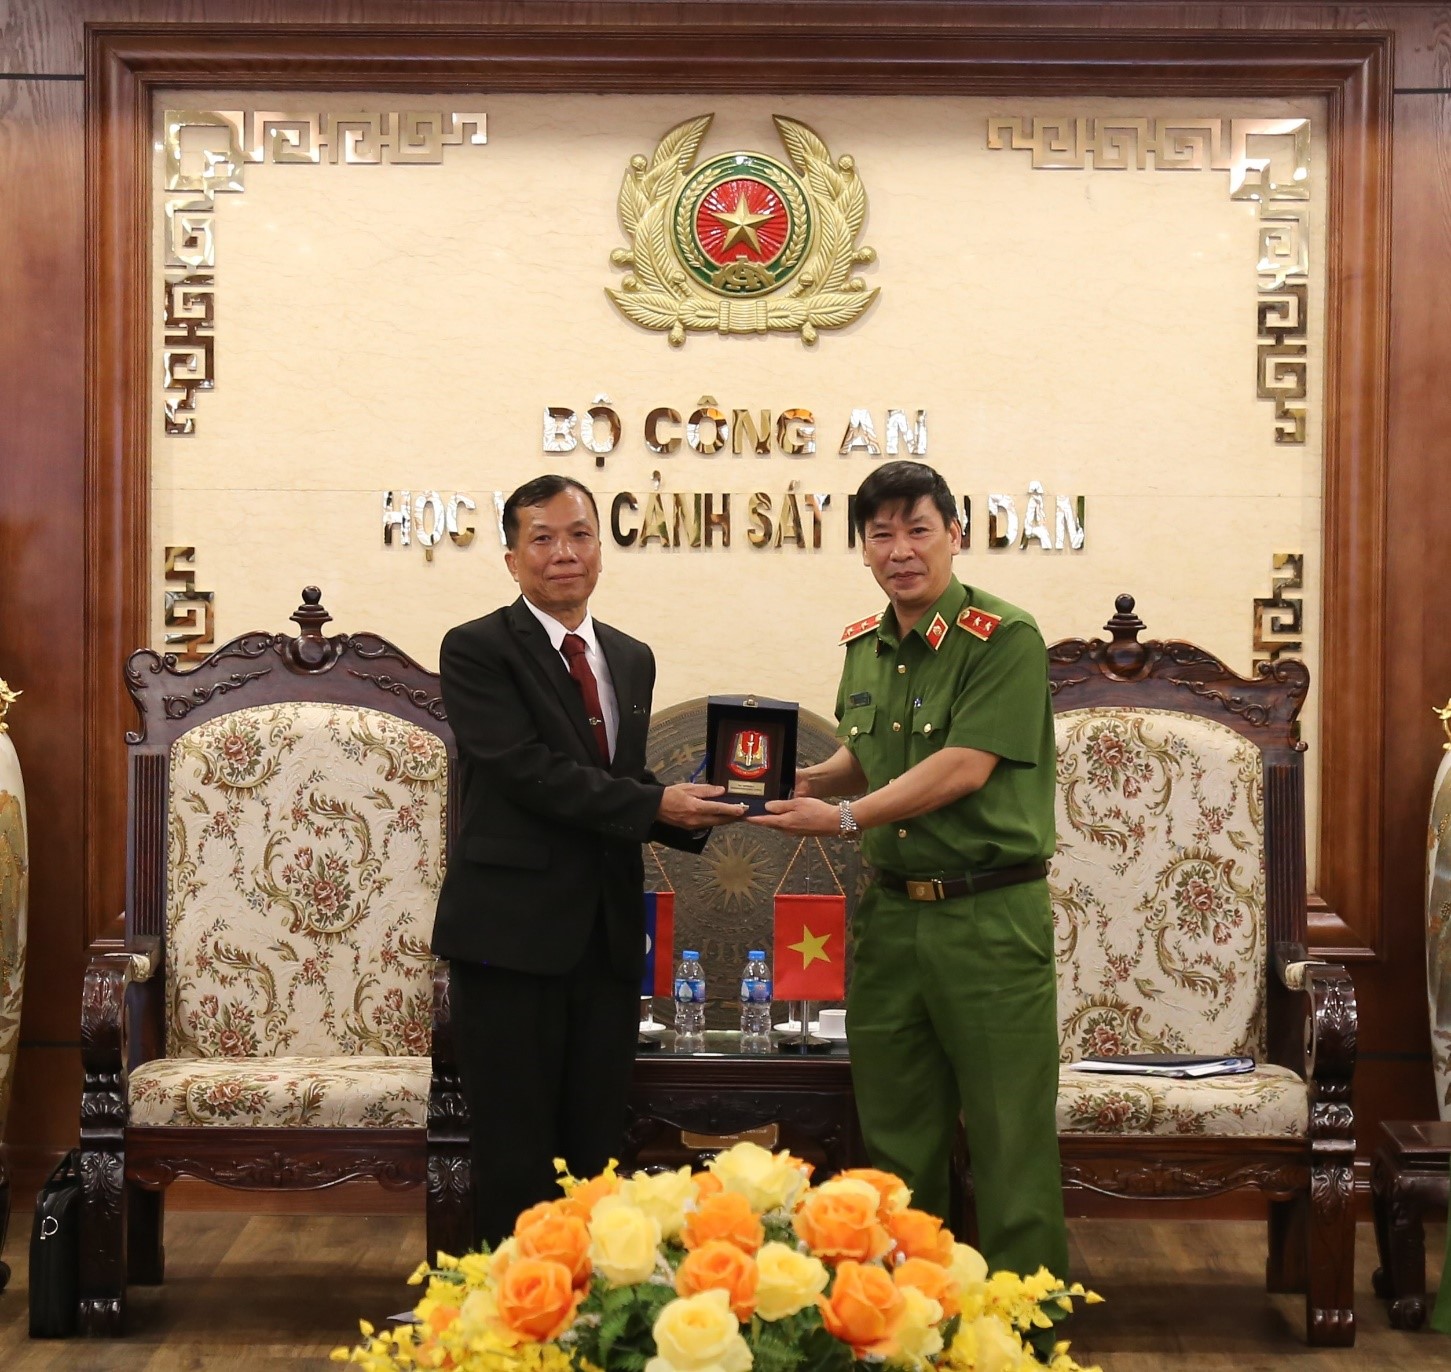 Trung tướng, GS, TS Trần Minh Hưởng, Giám đốc Học viện CSND tặng quà lưu niệm cho Đại tá, TS Kẹo-my-xay Xay-nhạ-vông, Phó Giám đốc Học viện CSND Lào